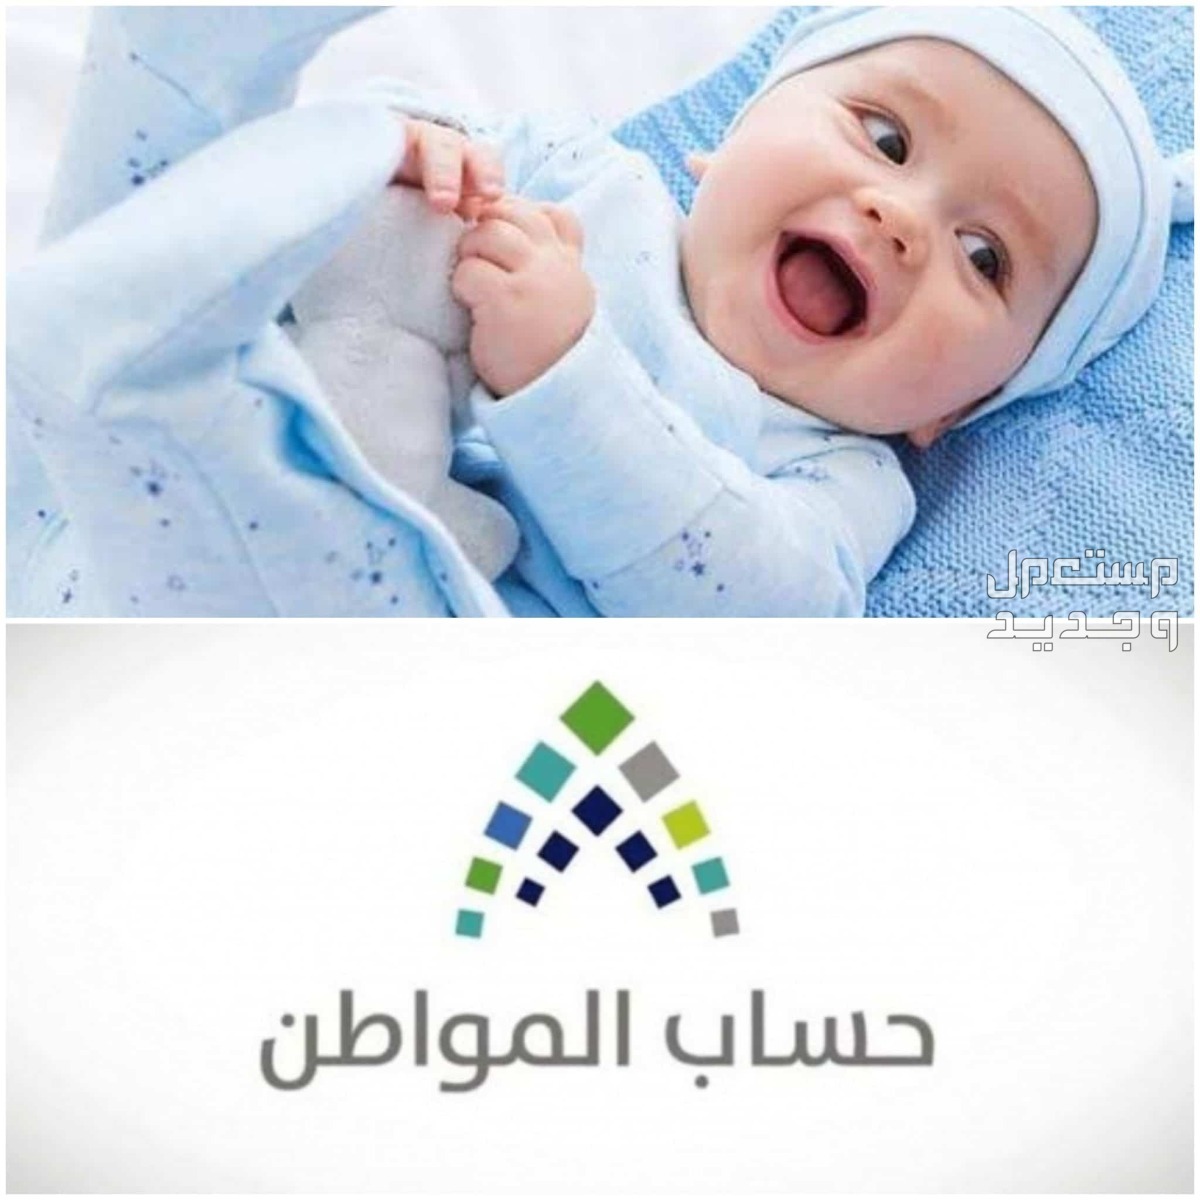 طريقة تسجيل المولود الجديد في حساب المواطن 1445 في مصر تسجيل المولود الجديد في حساب المواطن